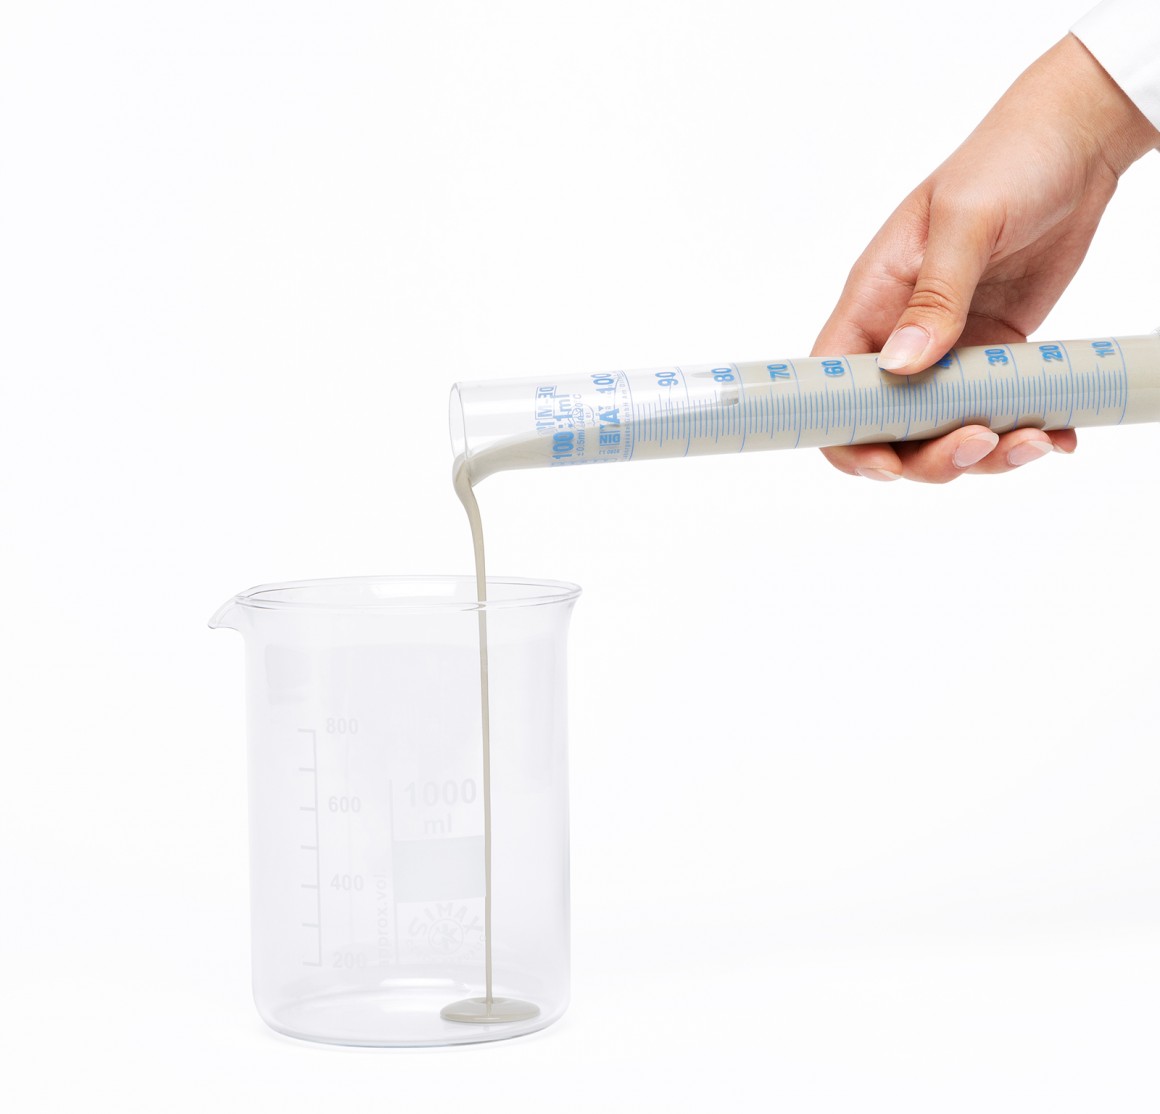 Инновационный запатентованный жидкий порошок для открытого литья Уникальный продукт!